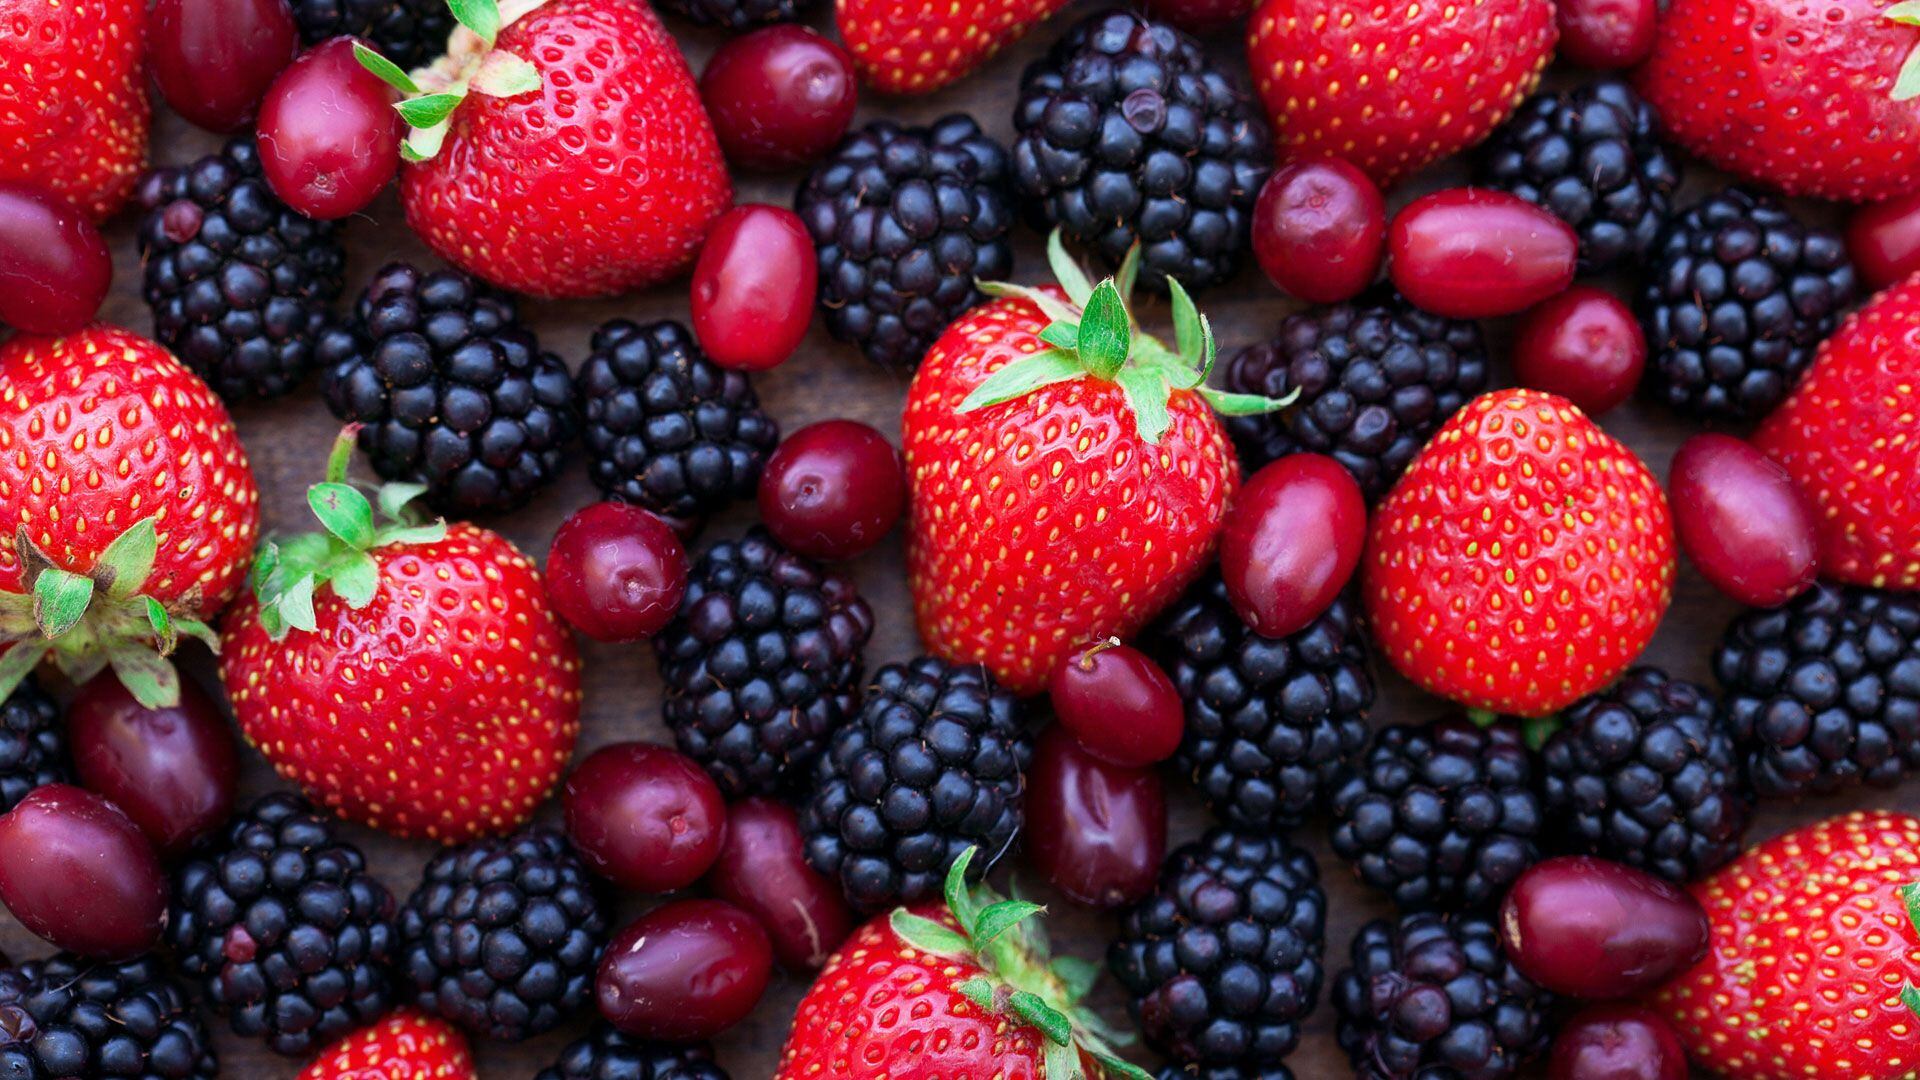 Los frutos rojos son muy recomendables, debido a sus propiedades antioxidantes (Shutterstock)